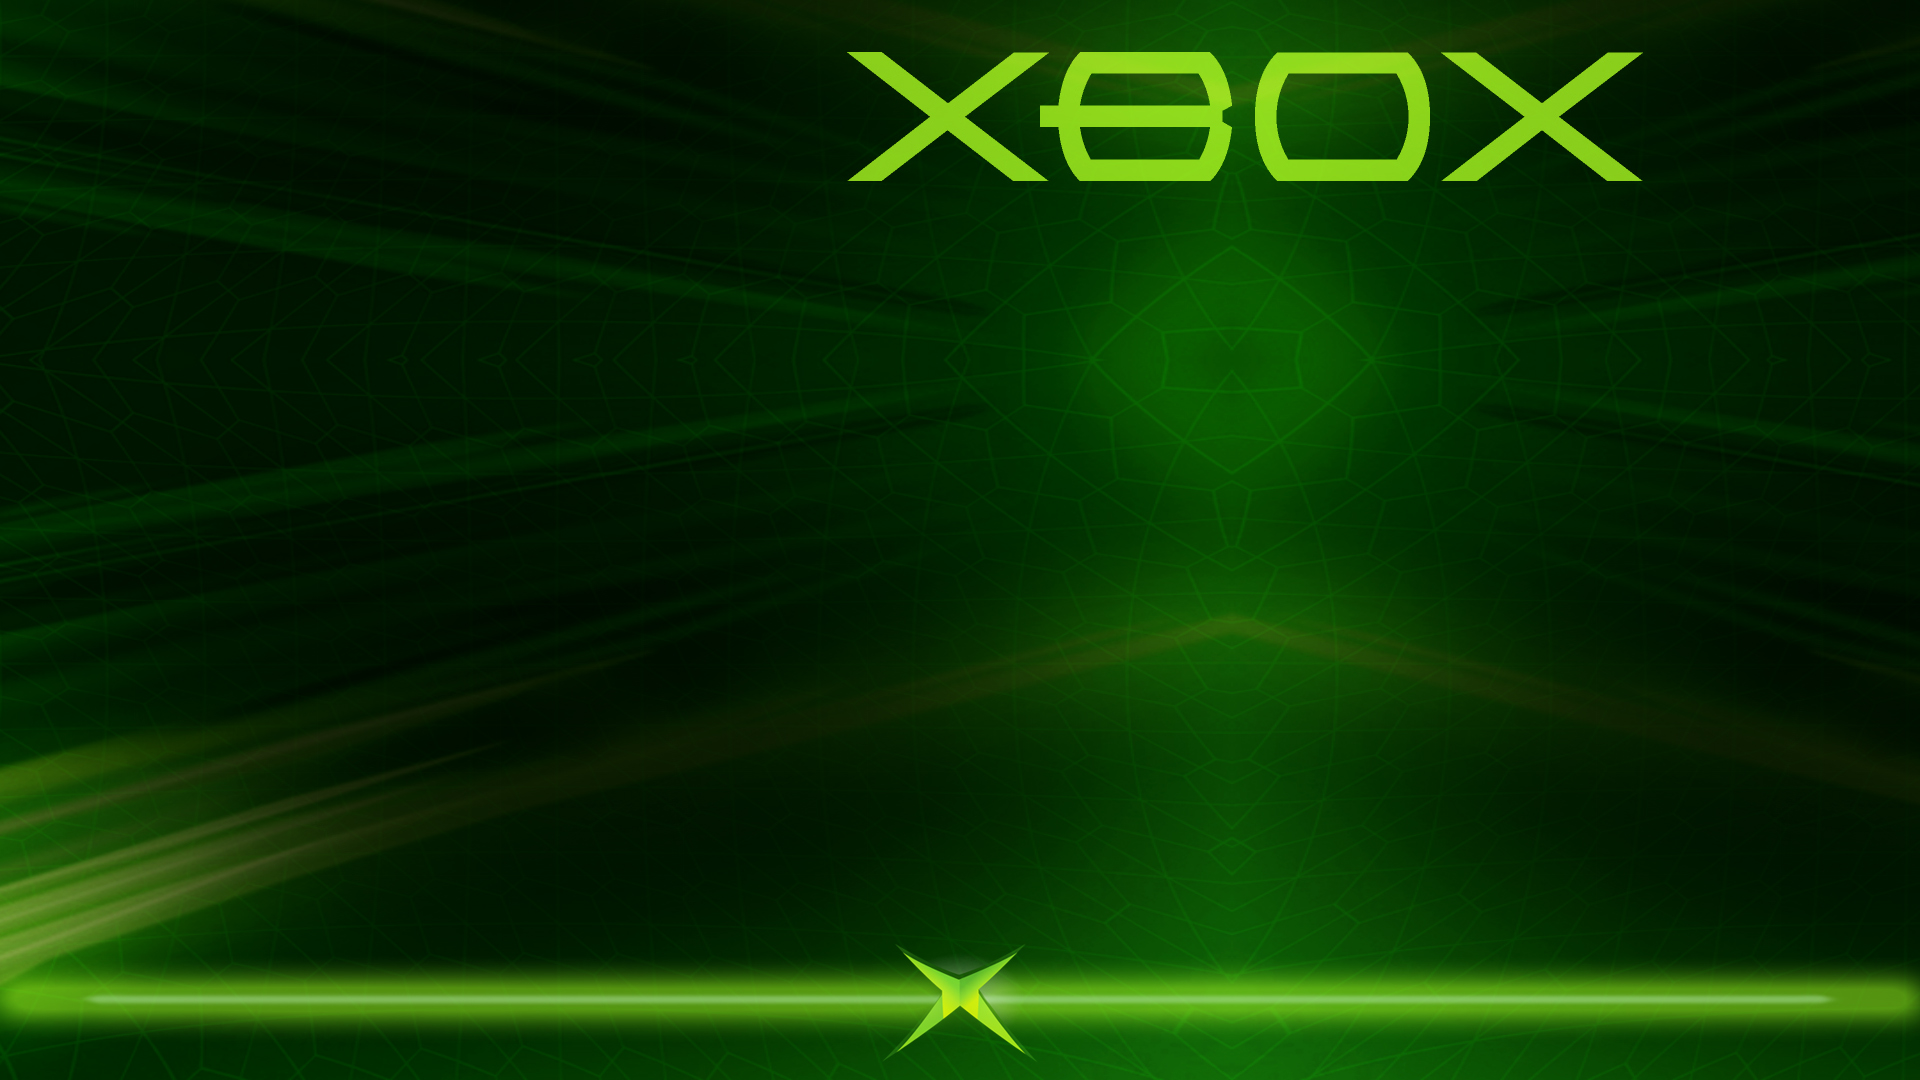 Tổng hợp 100+ Green xbox background tuyệt đẹp cho giao diện máy Xbox